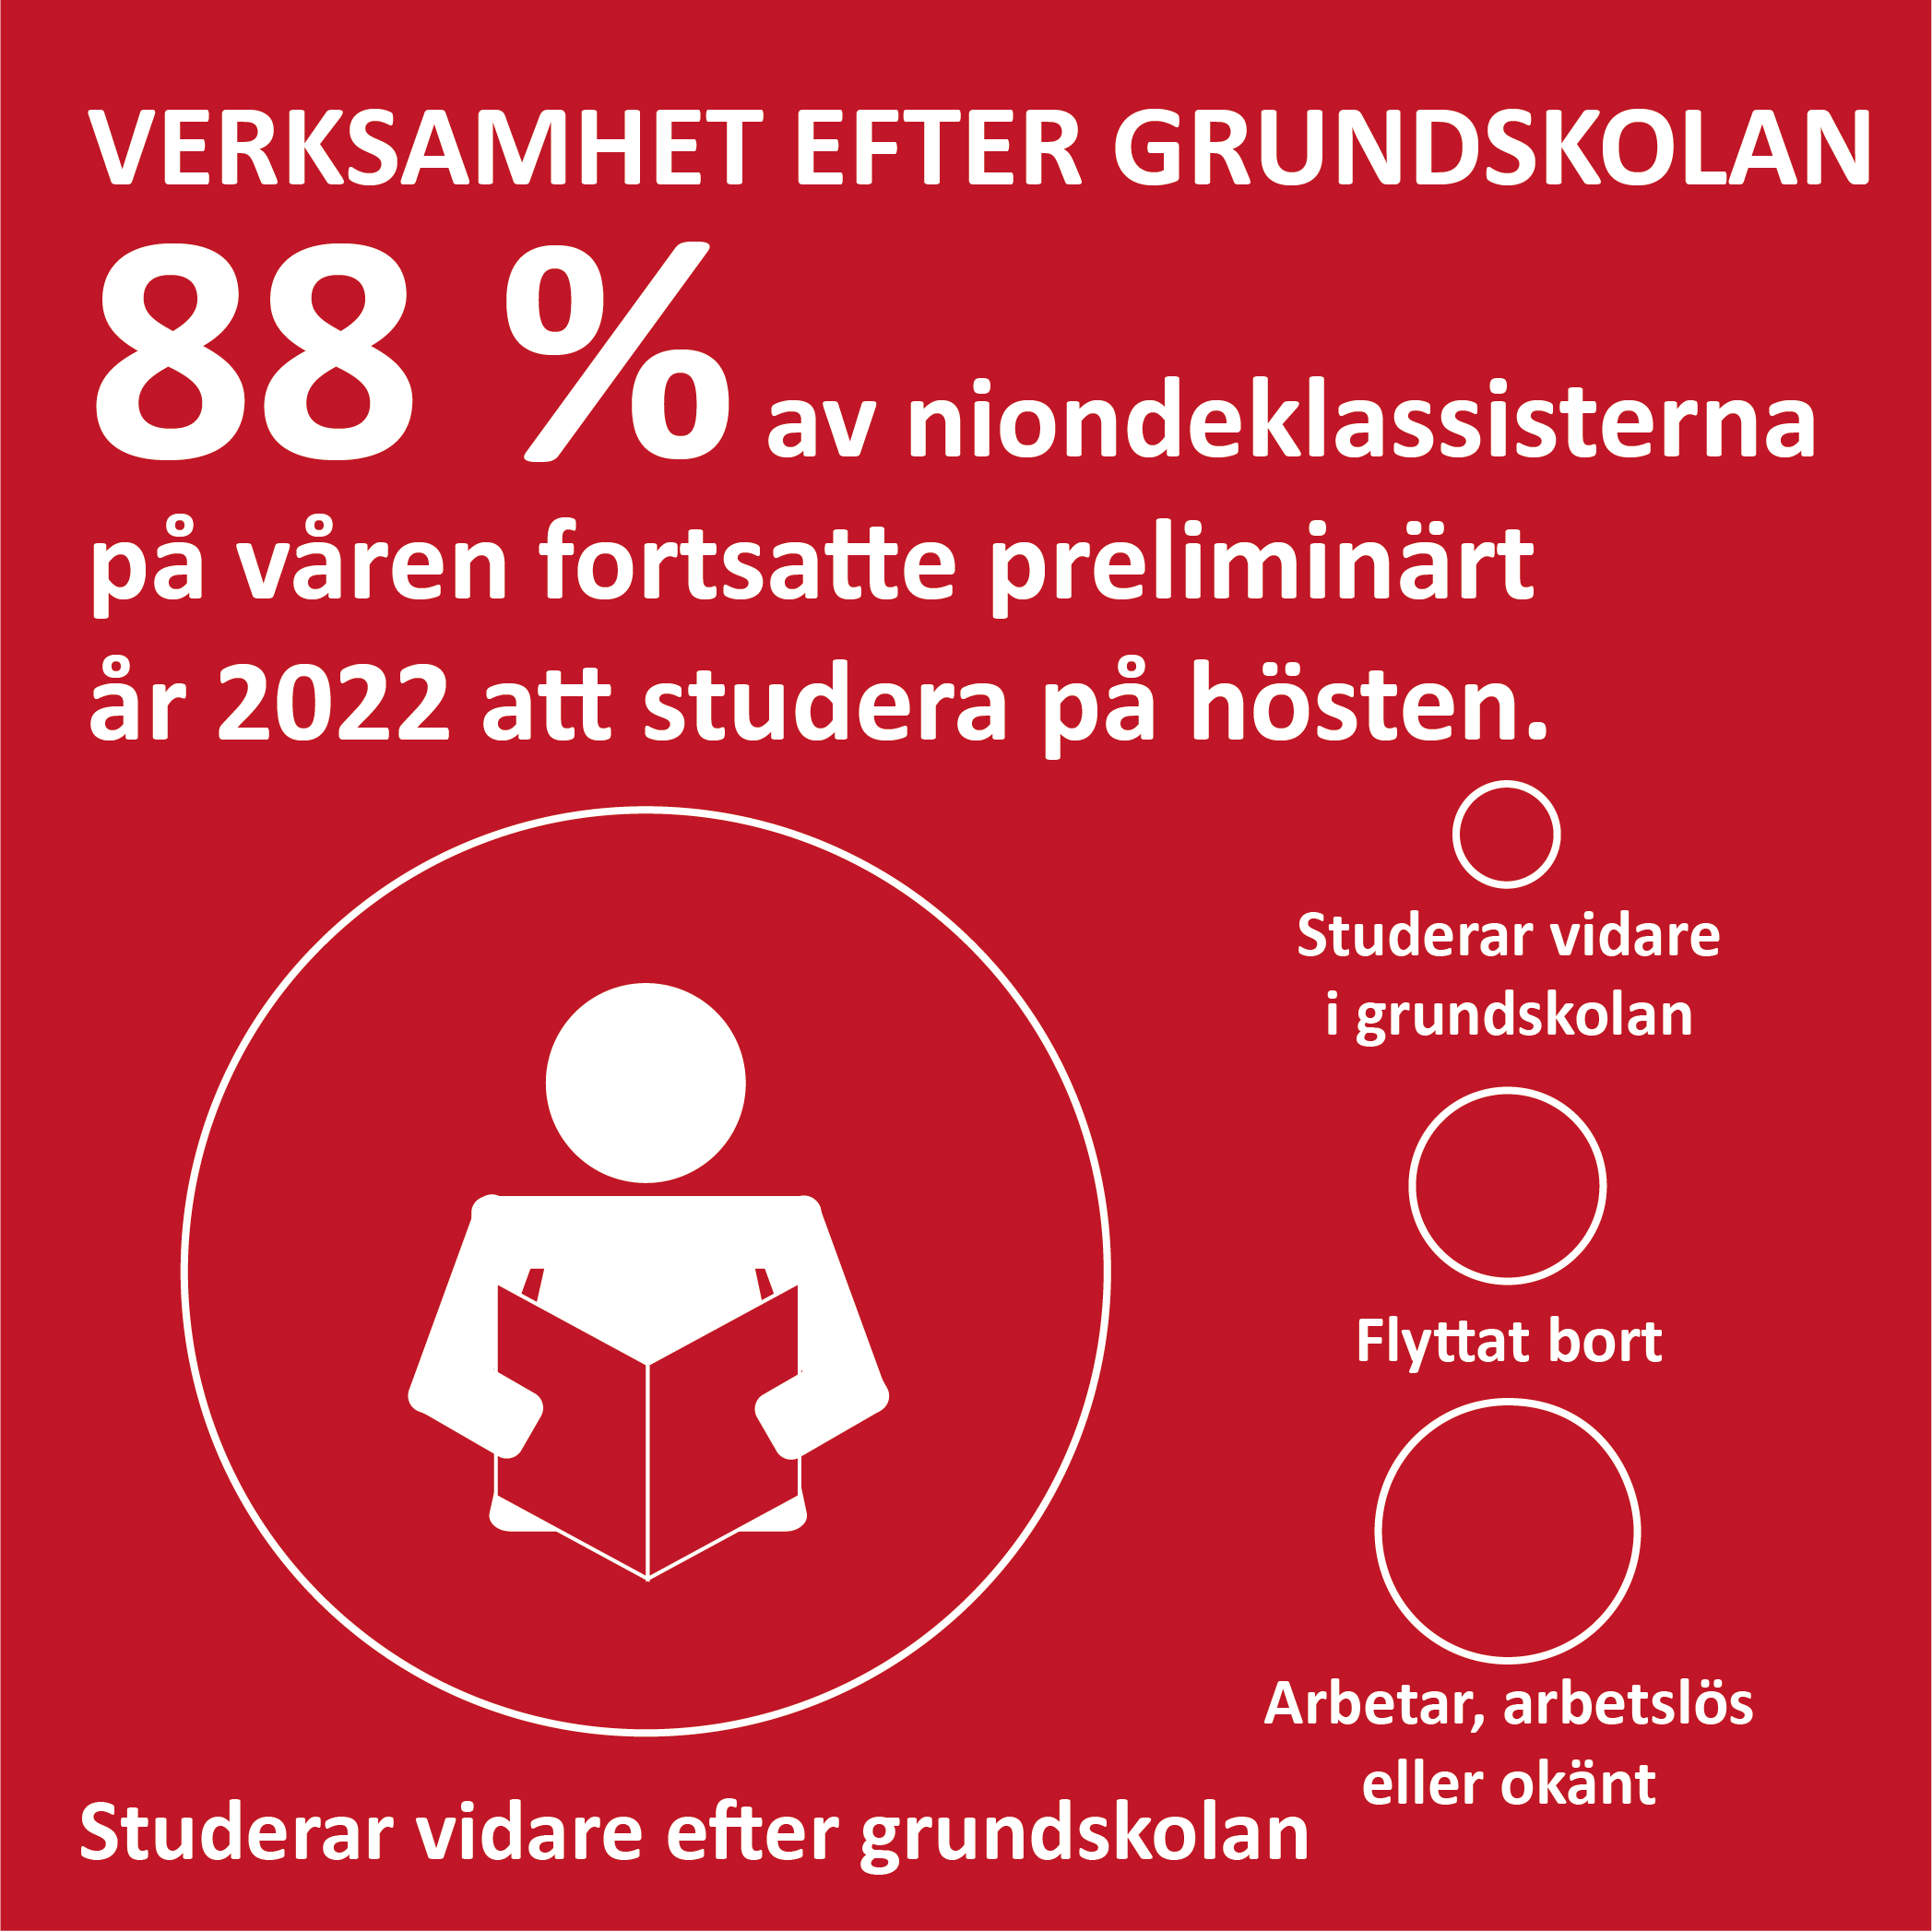 Infografik om sysselsättning efter grundskolan på Åland